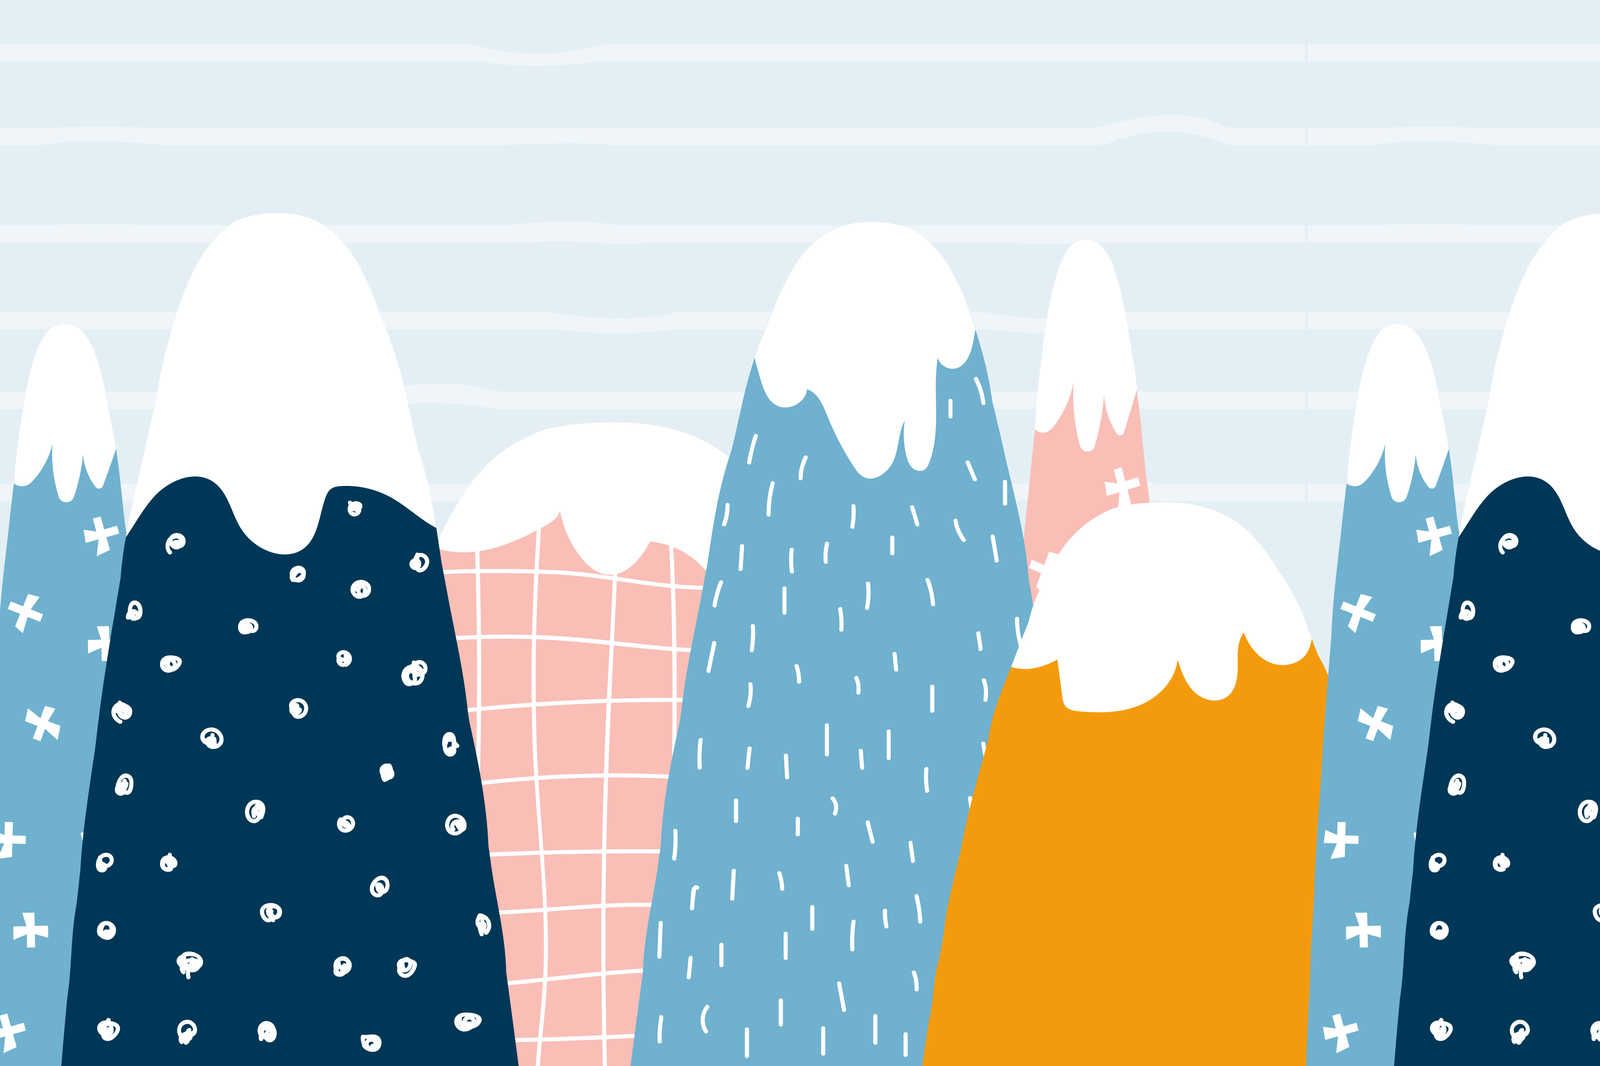             Lienzo con colinas nevadas en estilo pintado - 90 cm x 60 cm
        